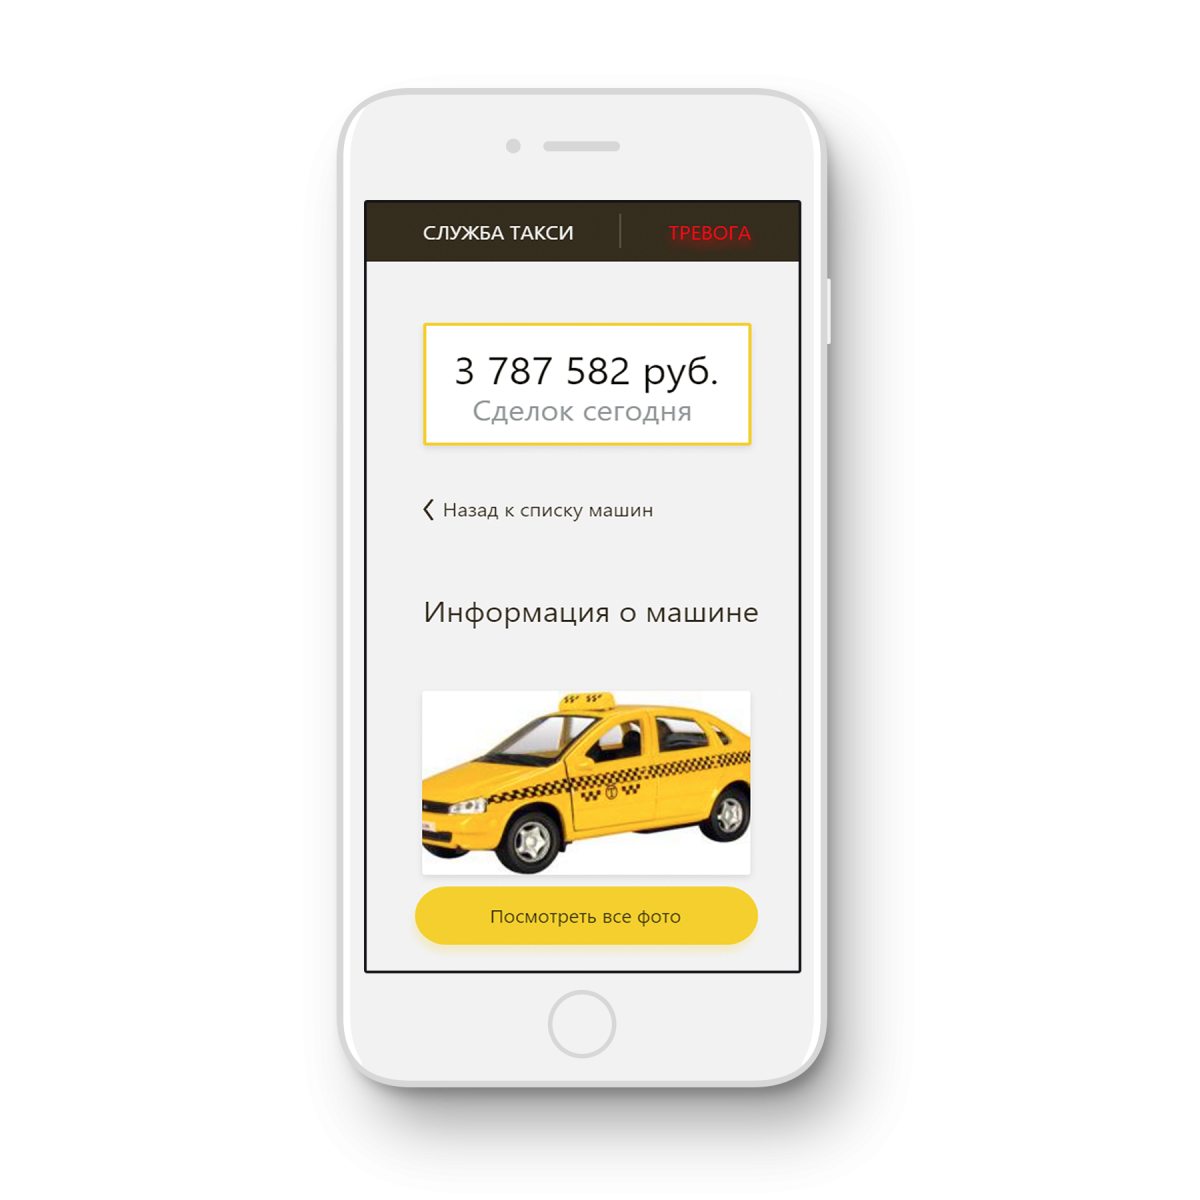 Вызвать такси екатеринбург телефон. Приложение такси. Реклама приложения такси. Мобильное приложение такси.